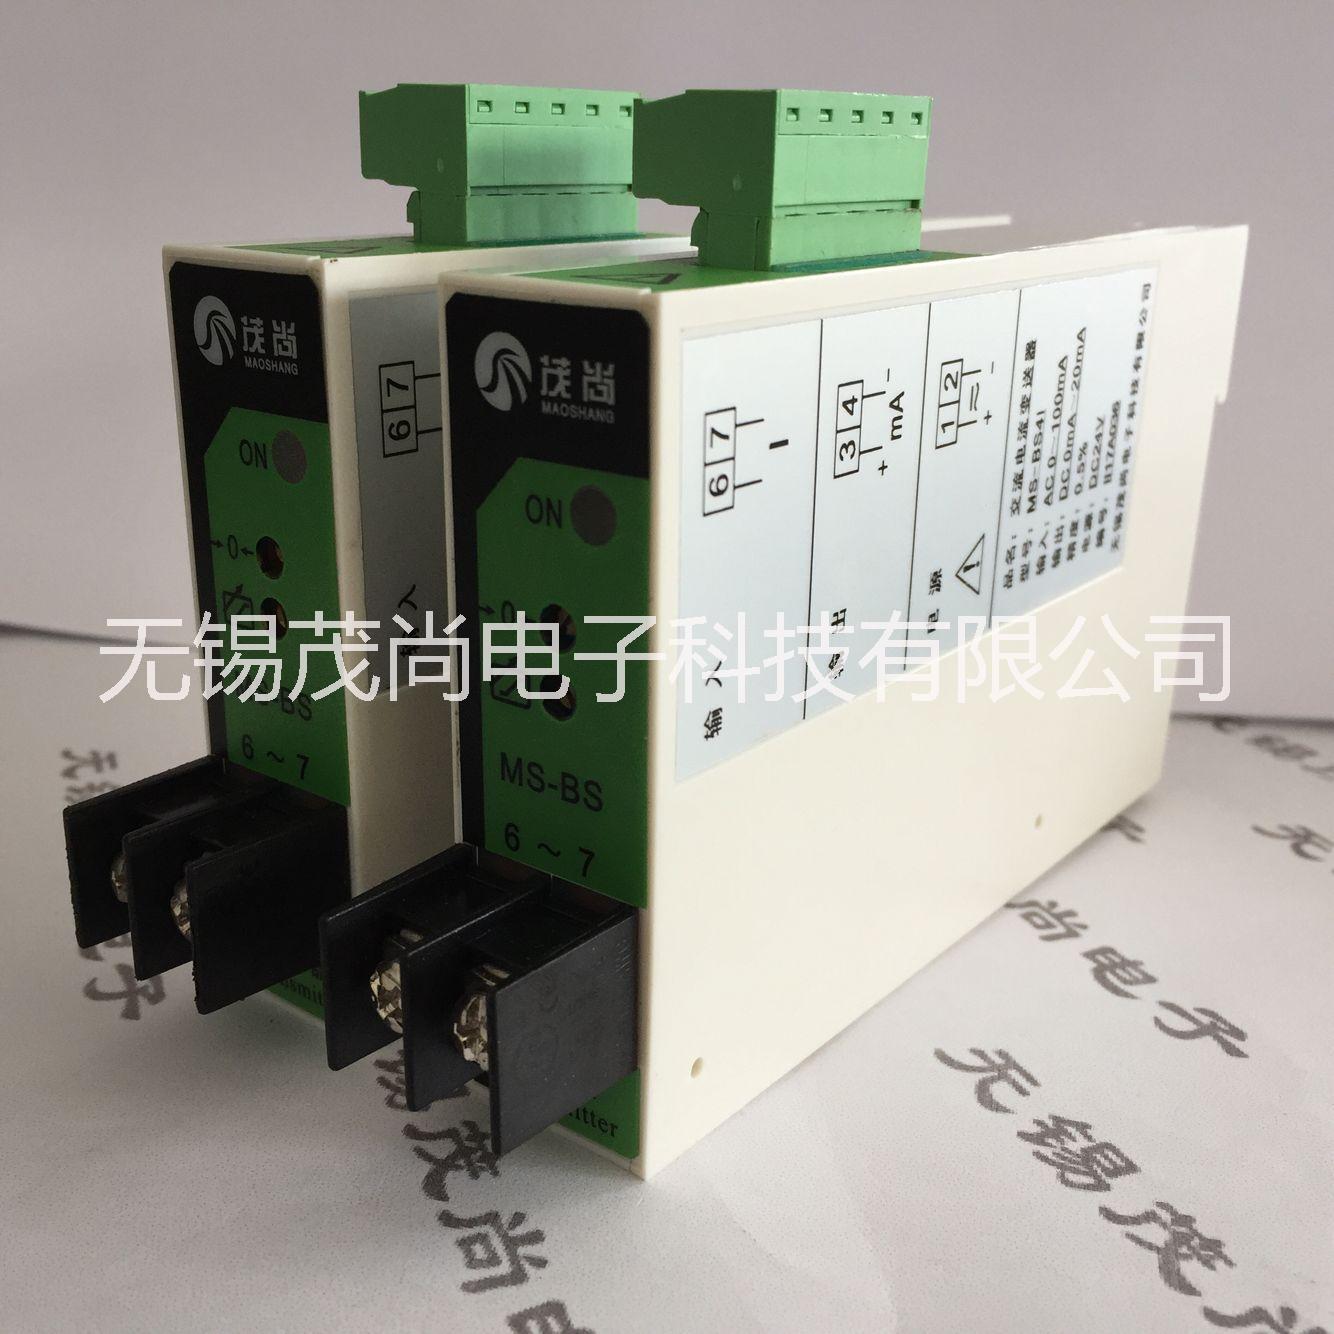 0-300V转0-20mA电压转电流模块MS-BS4U交流电压转换模块图片